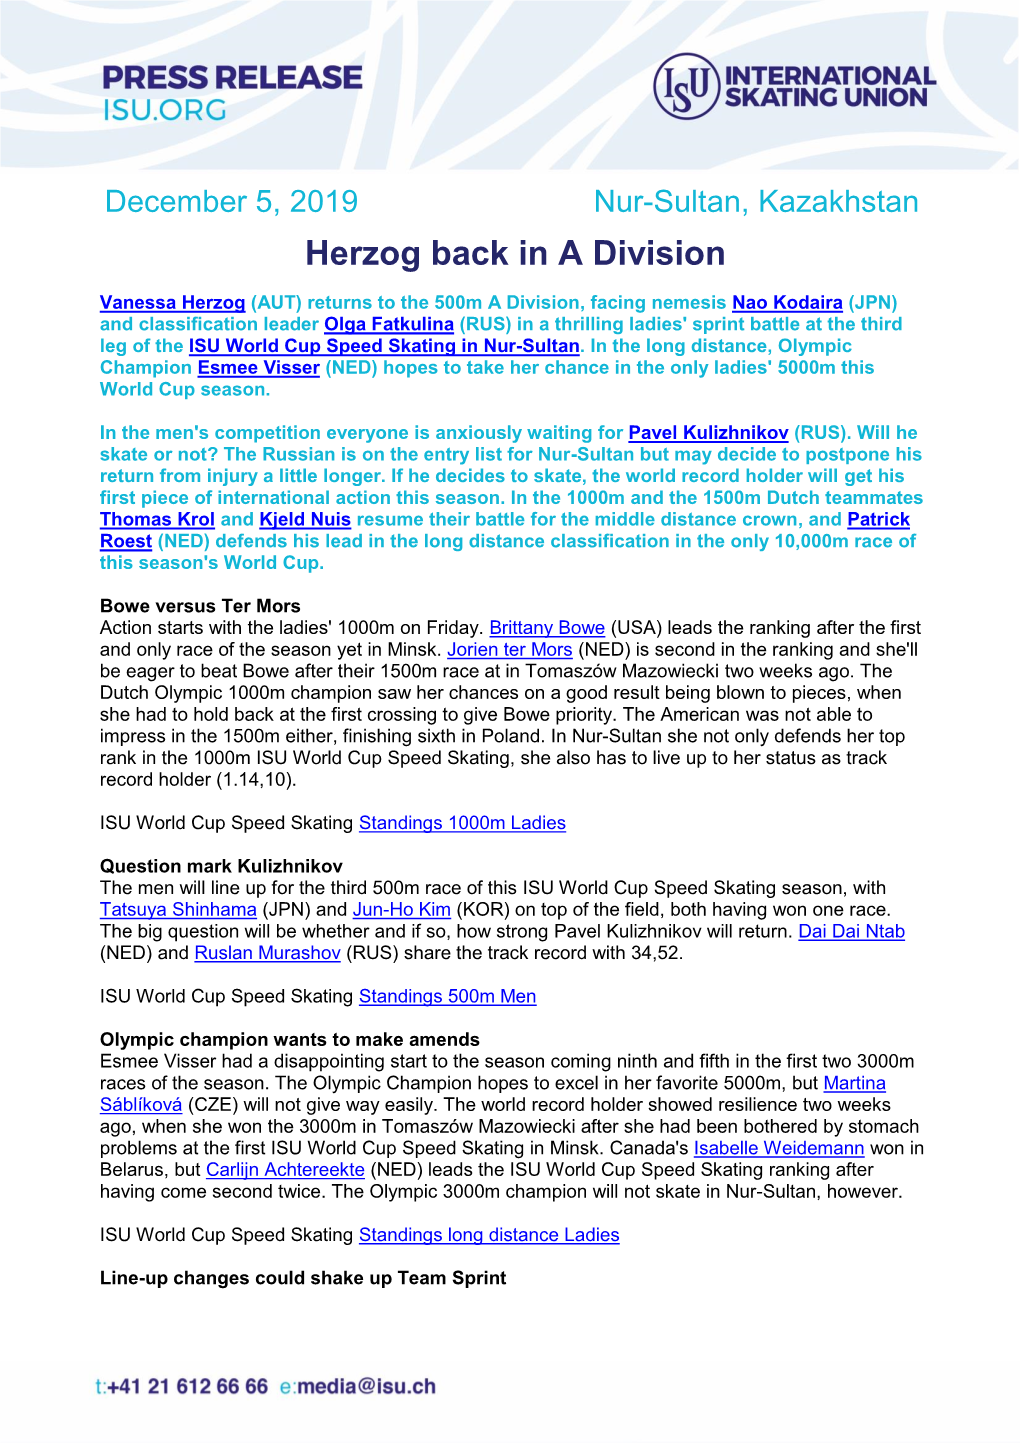 Herzog Back in a Division